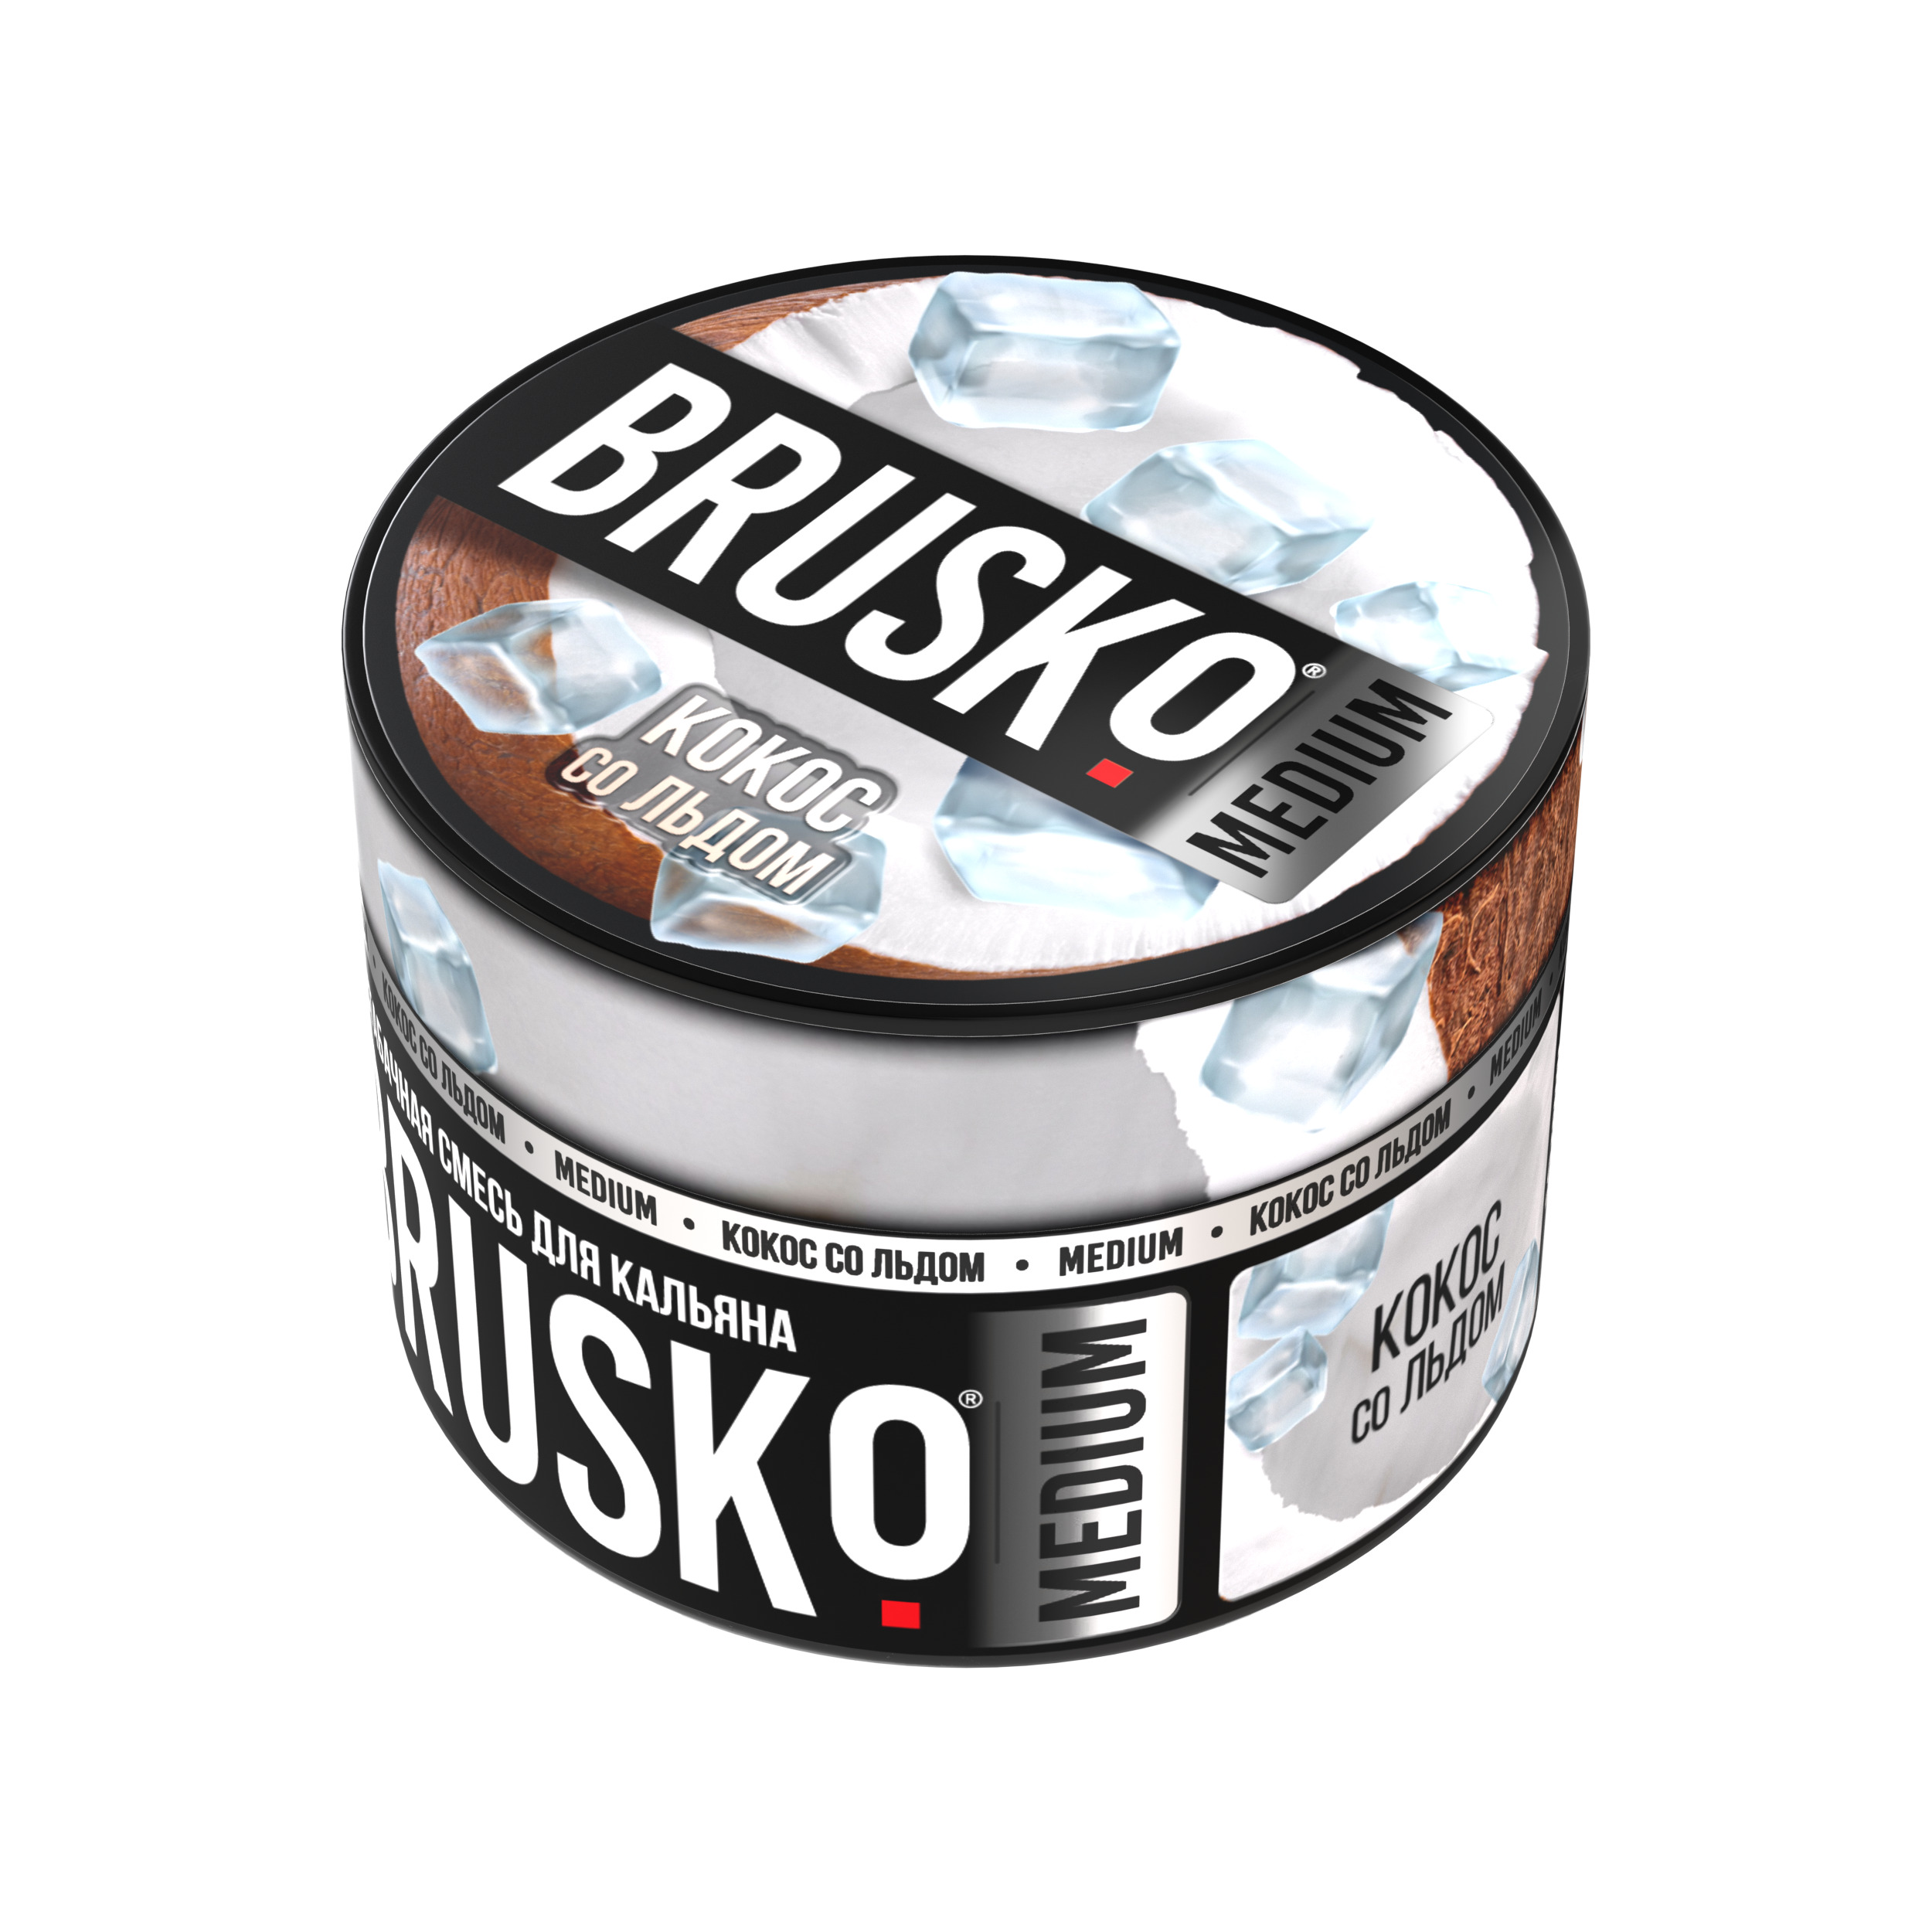 Бестабачная смесь для кальяна BRUSKO, 50 г, Кокос со льдом, Medium